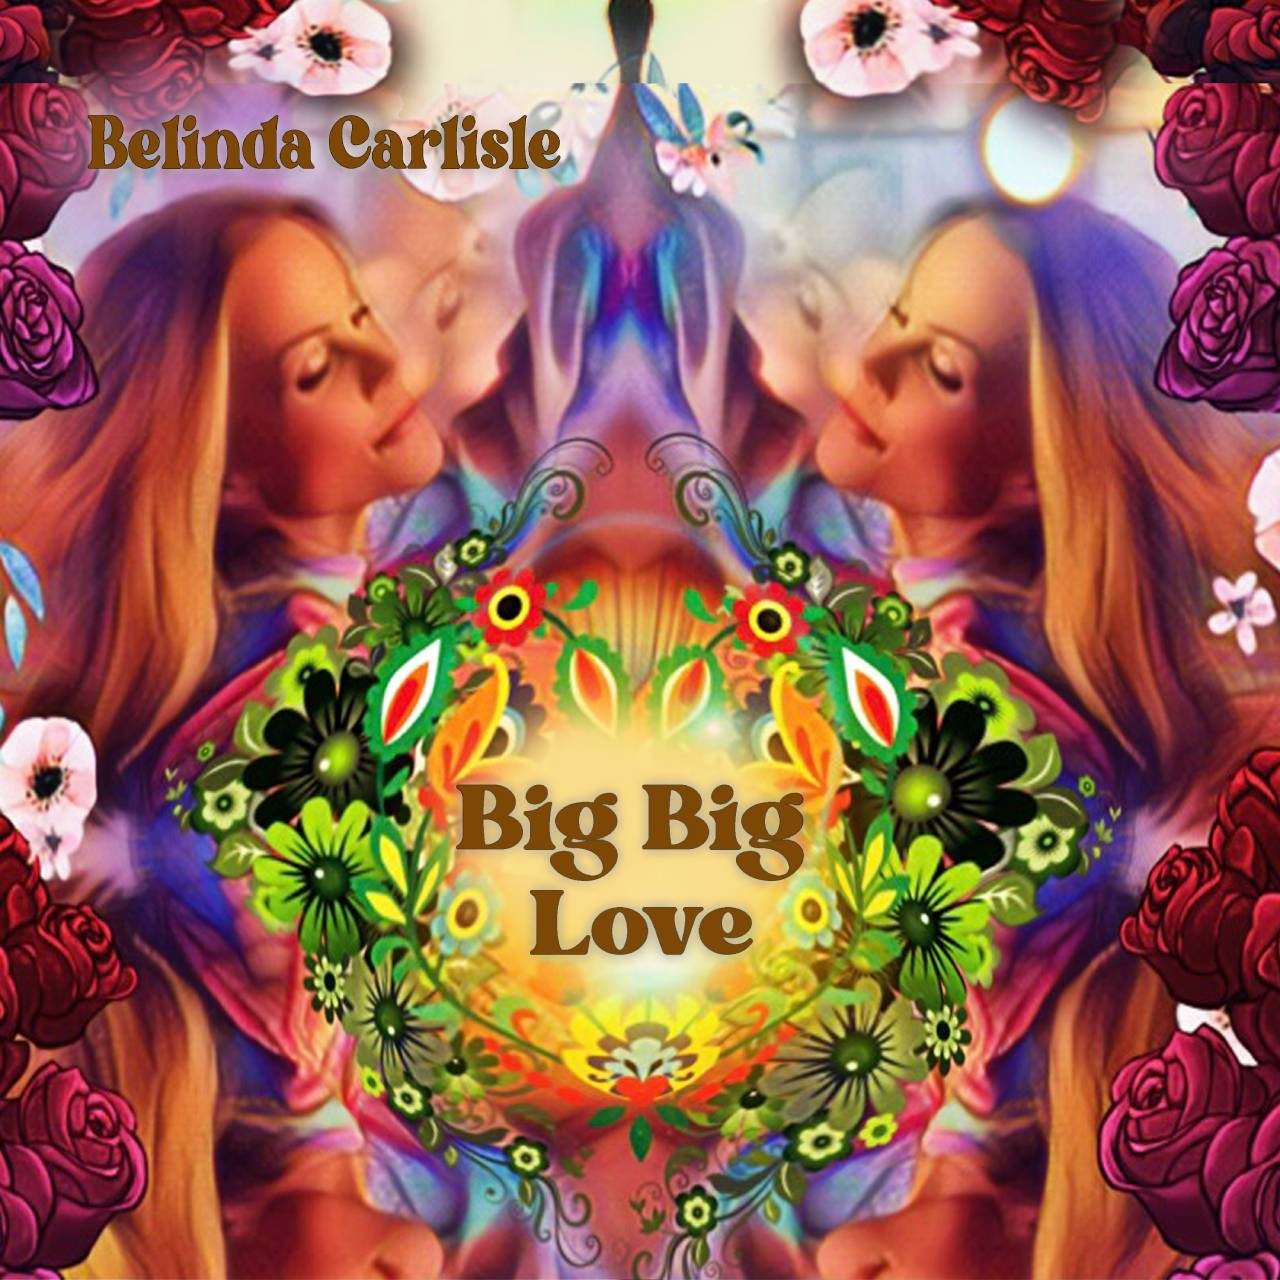 Belinda Carlisle 'Big Big Love' Single